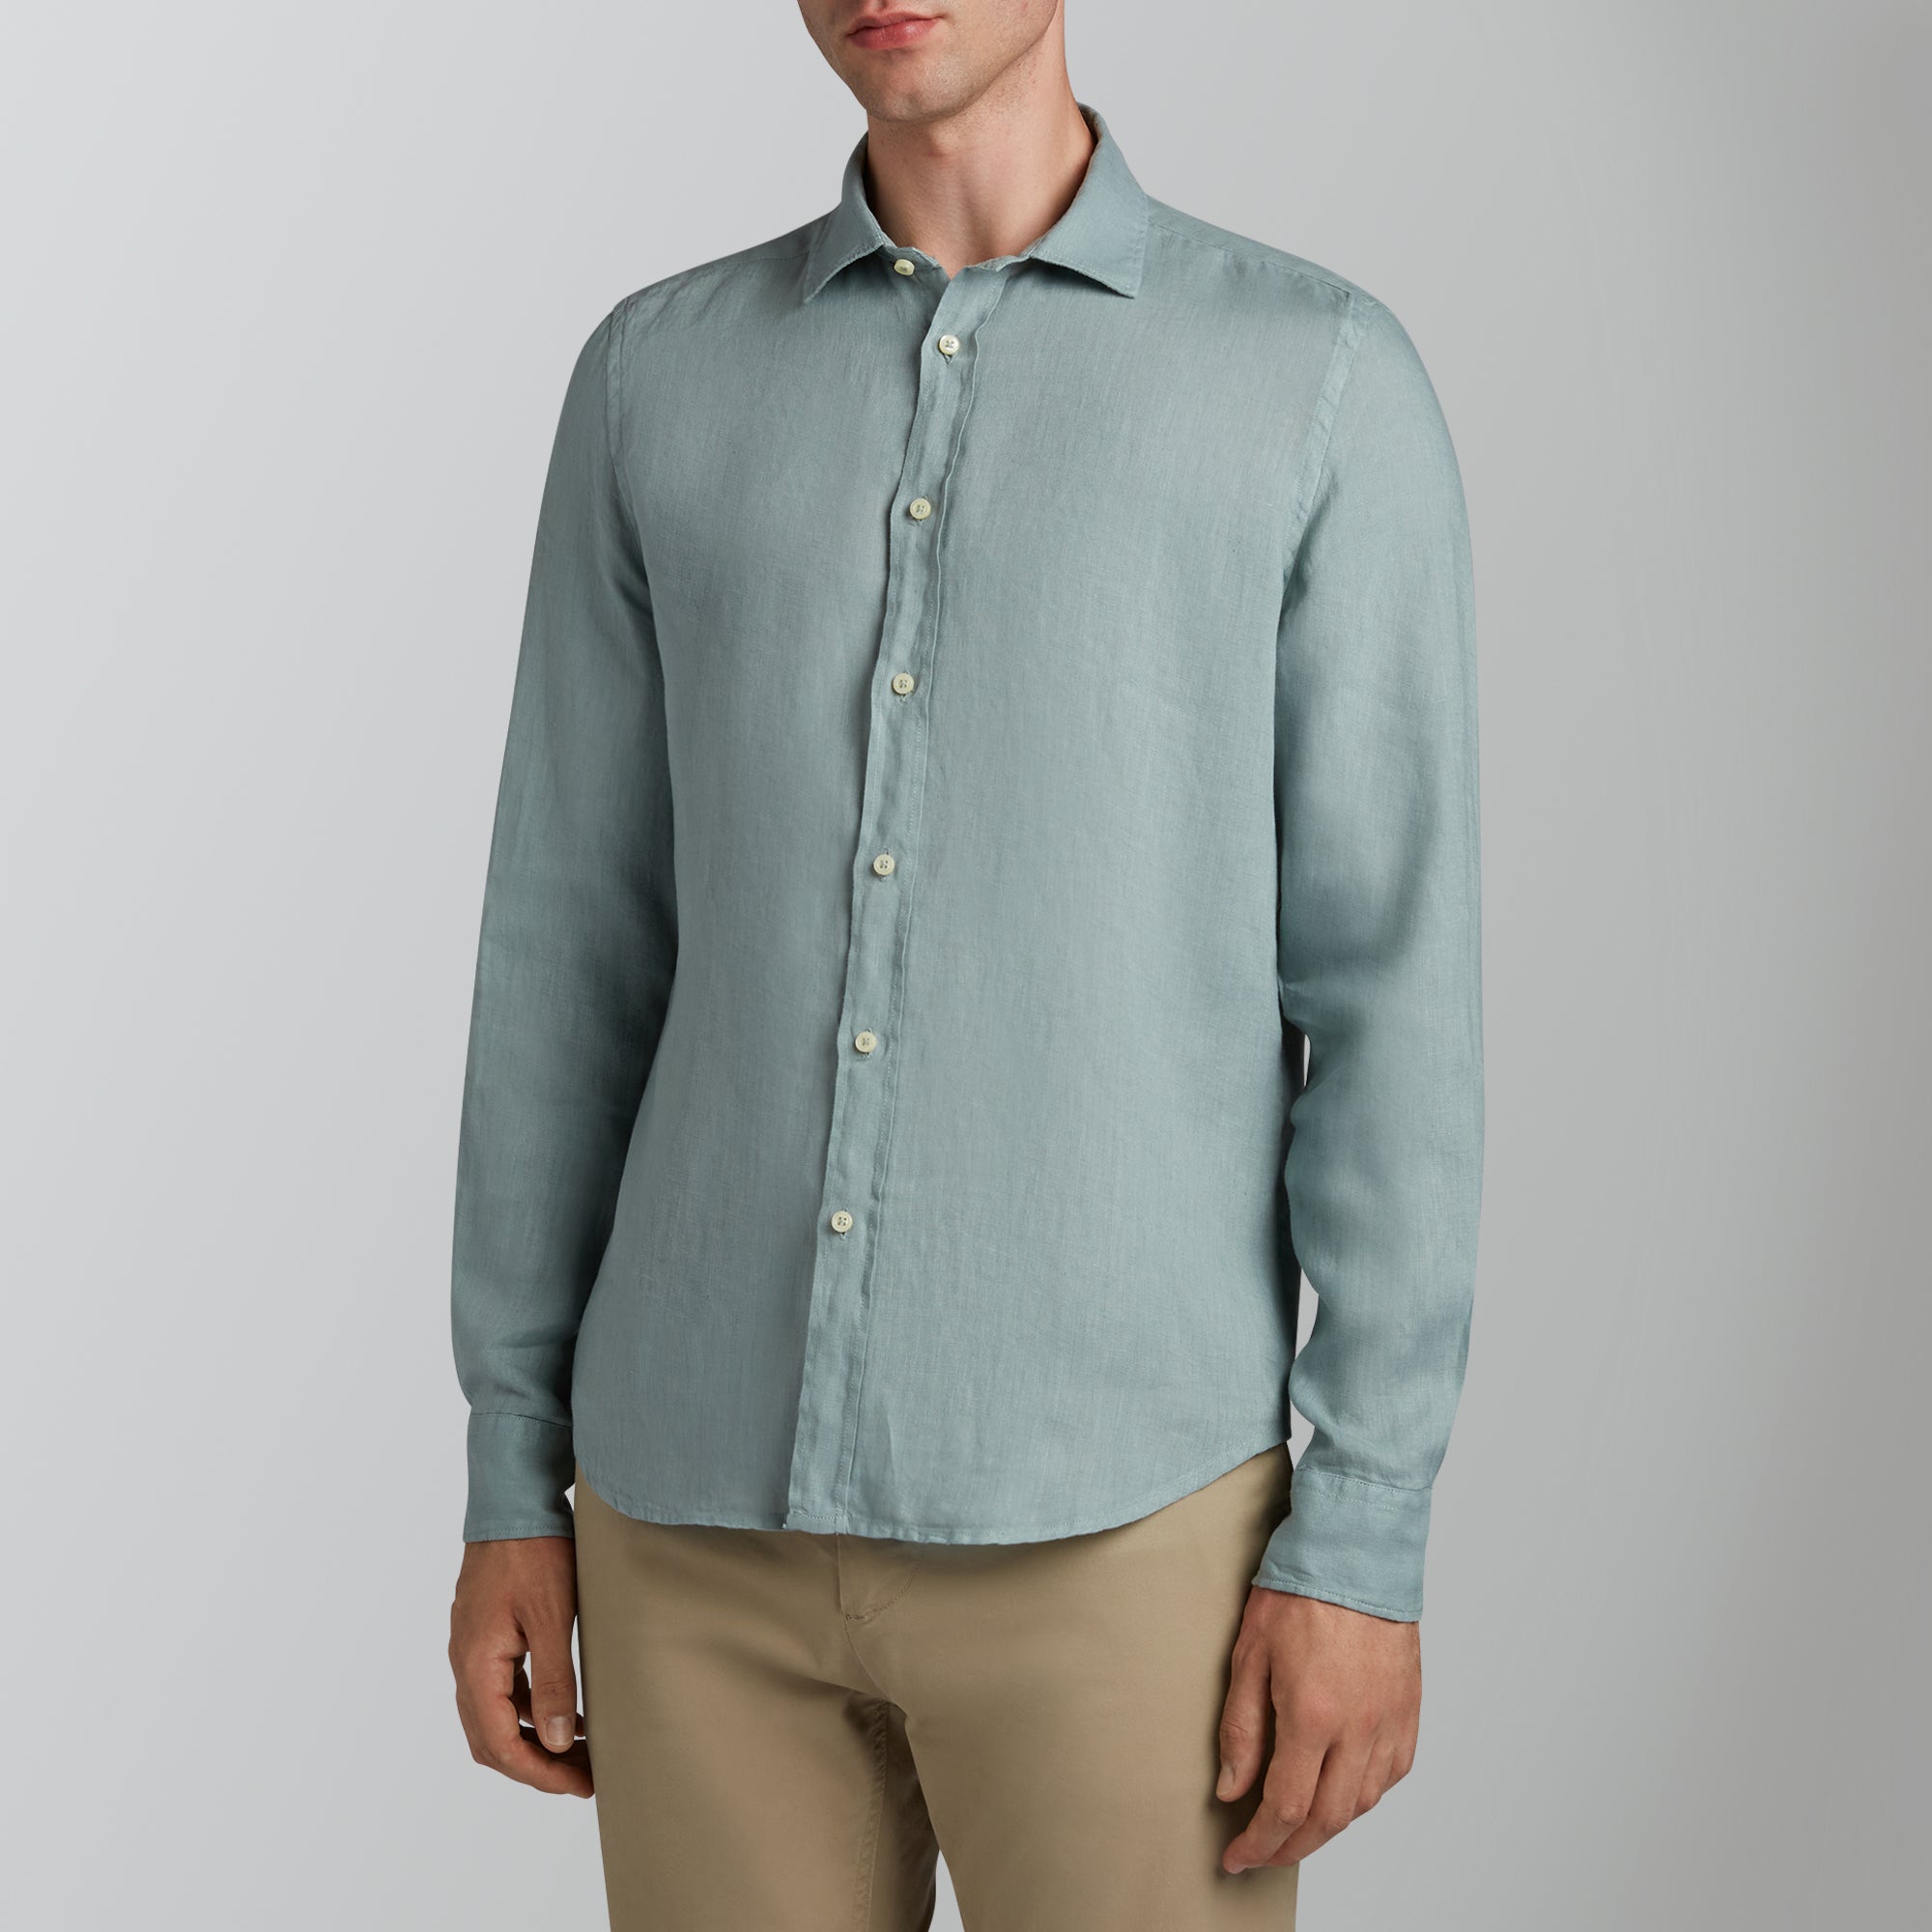 Garment-dyed linen sage shirt – www.store.womostore.com